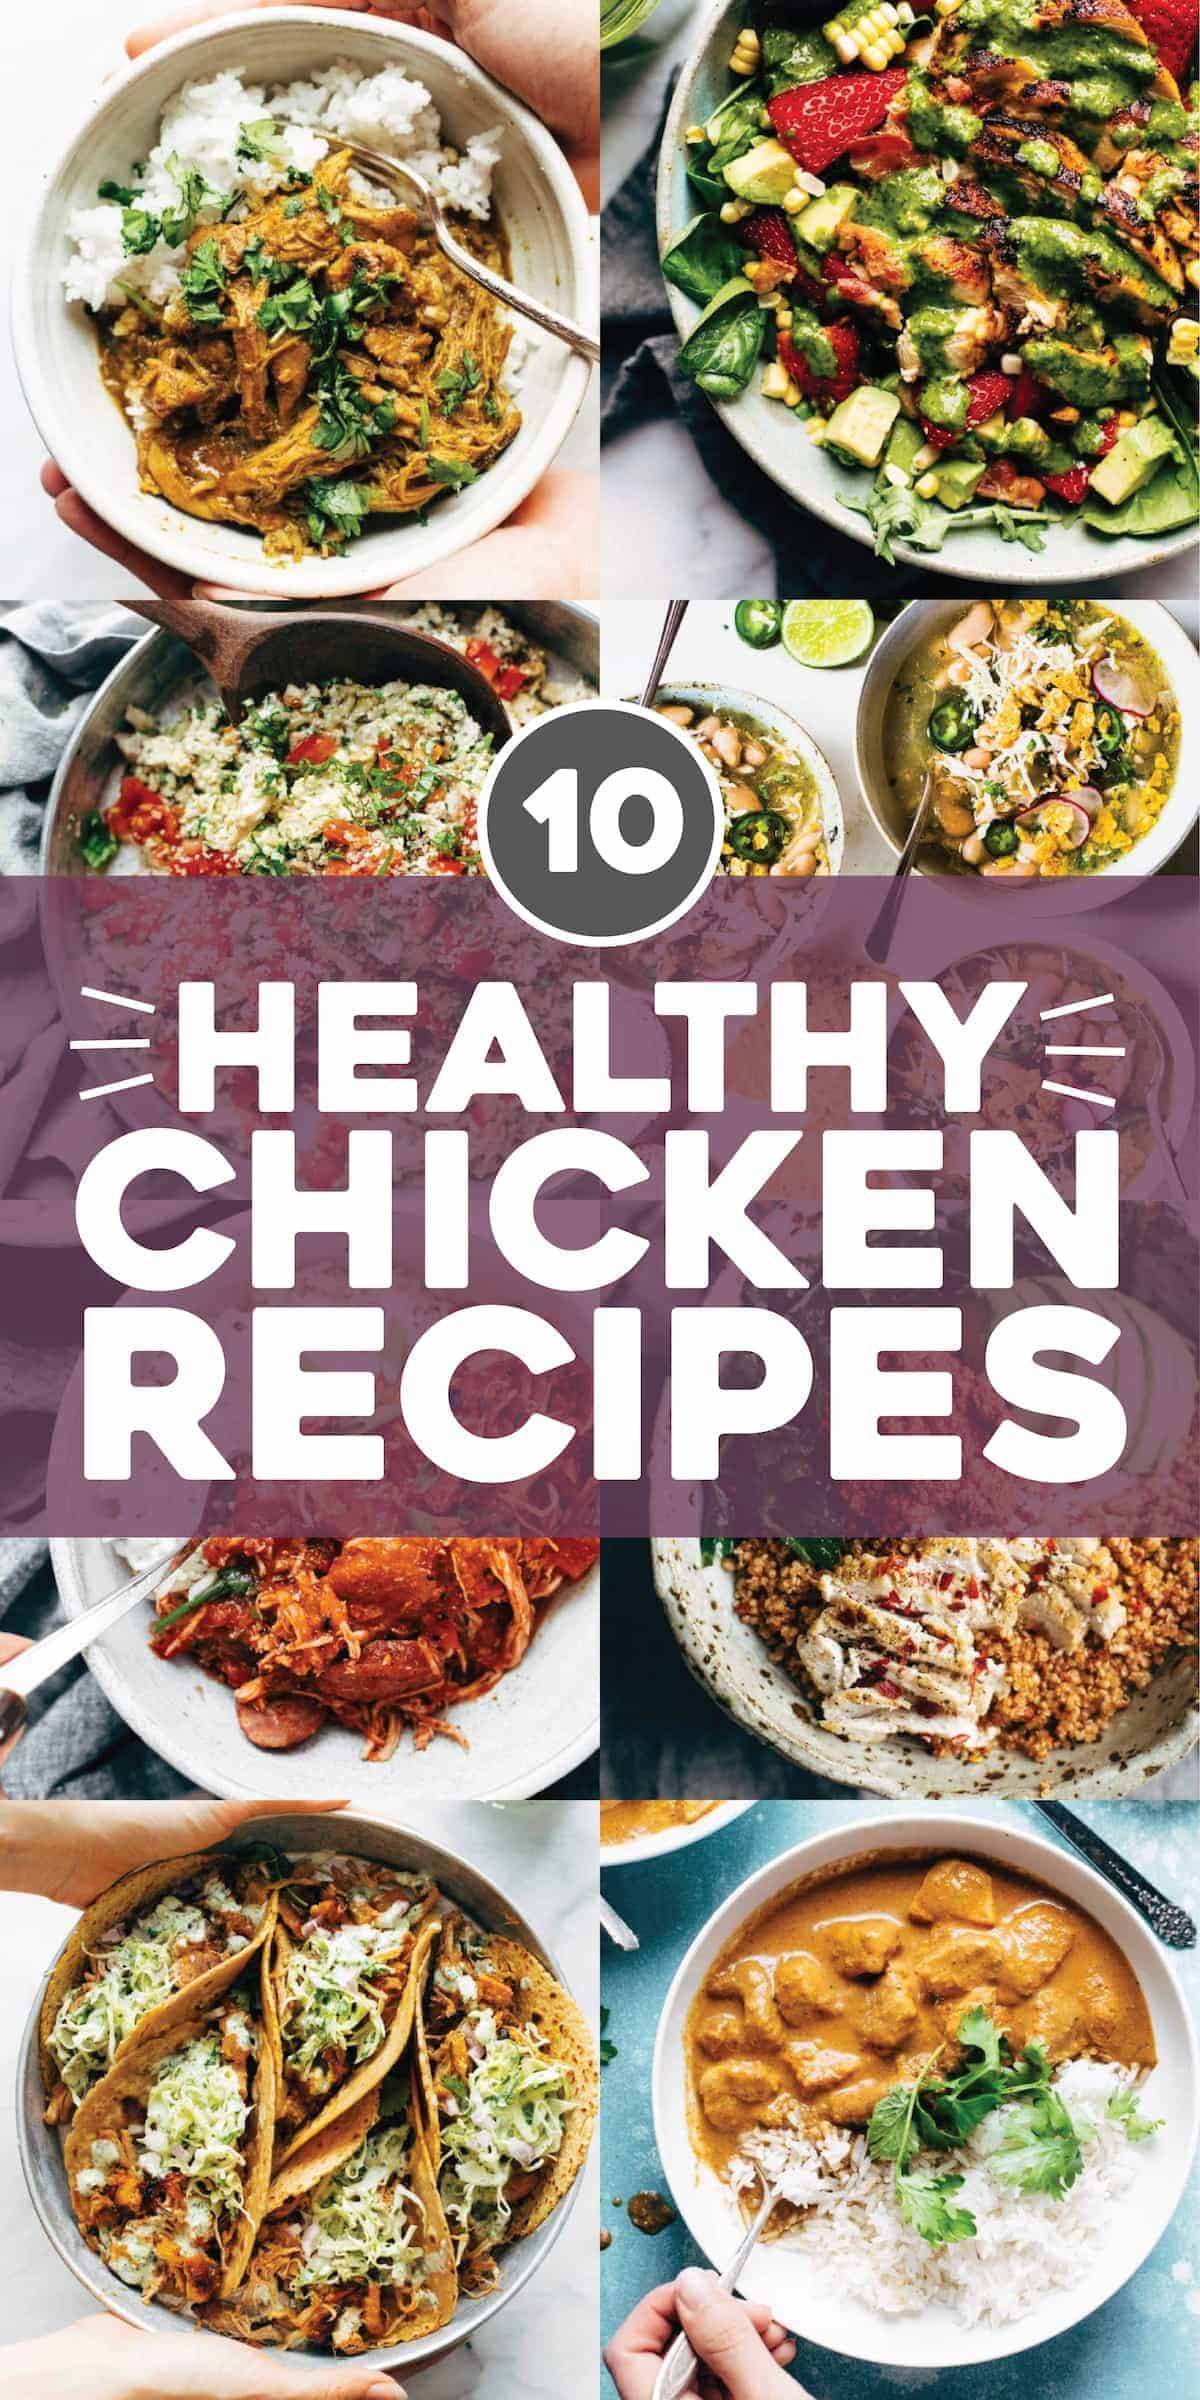 Our Best Heathy Chicken Recipes - Pinch of Yum